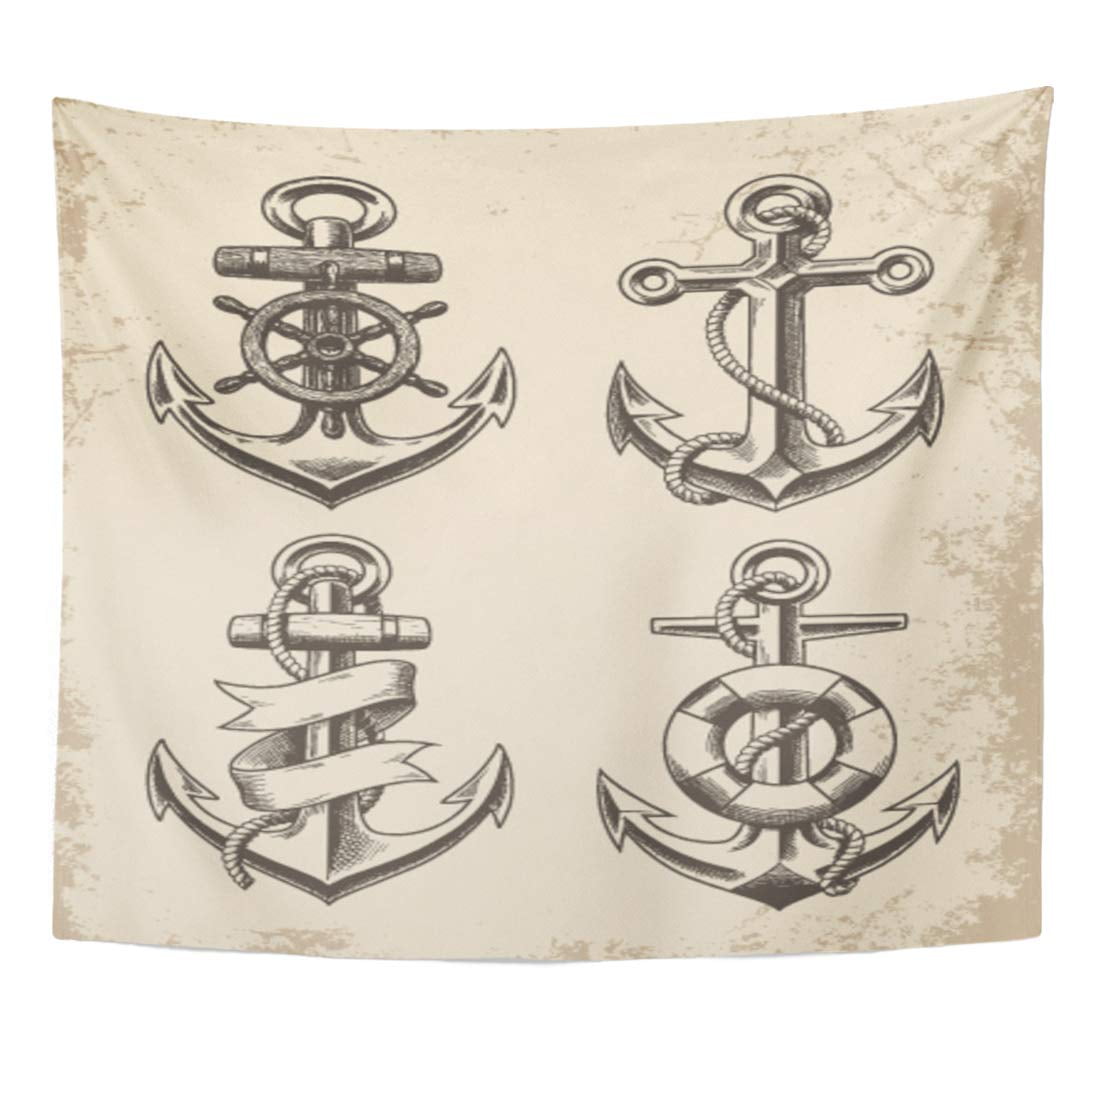 nautical anchor tattoo designs